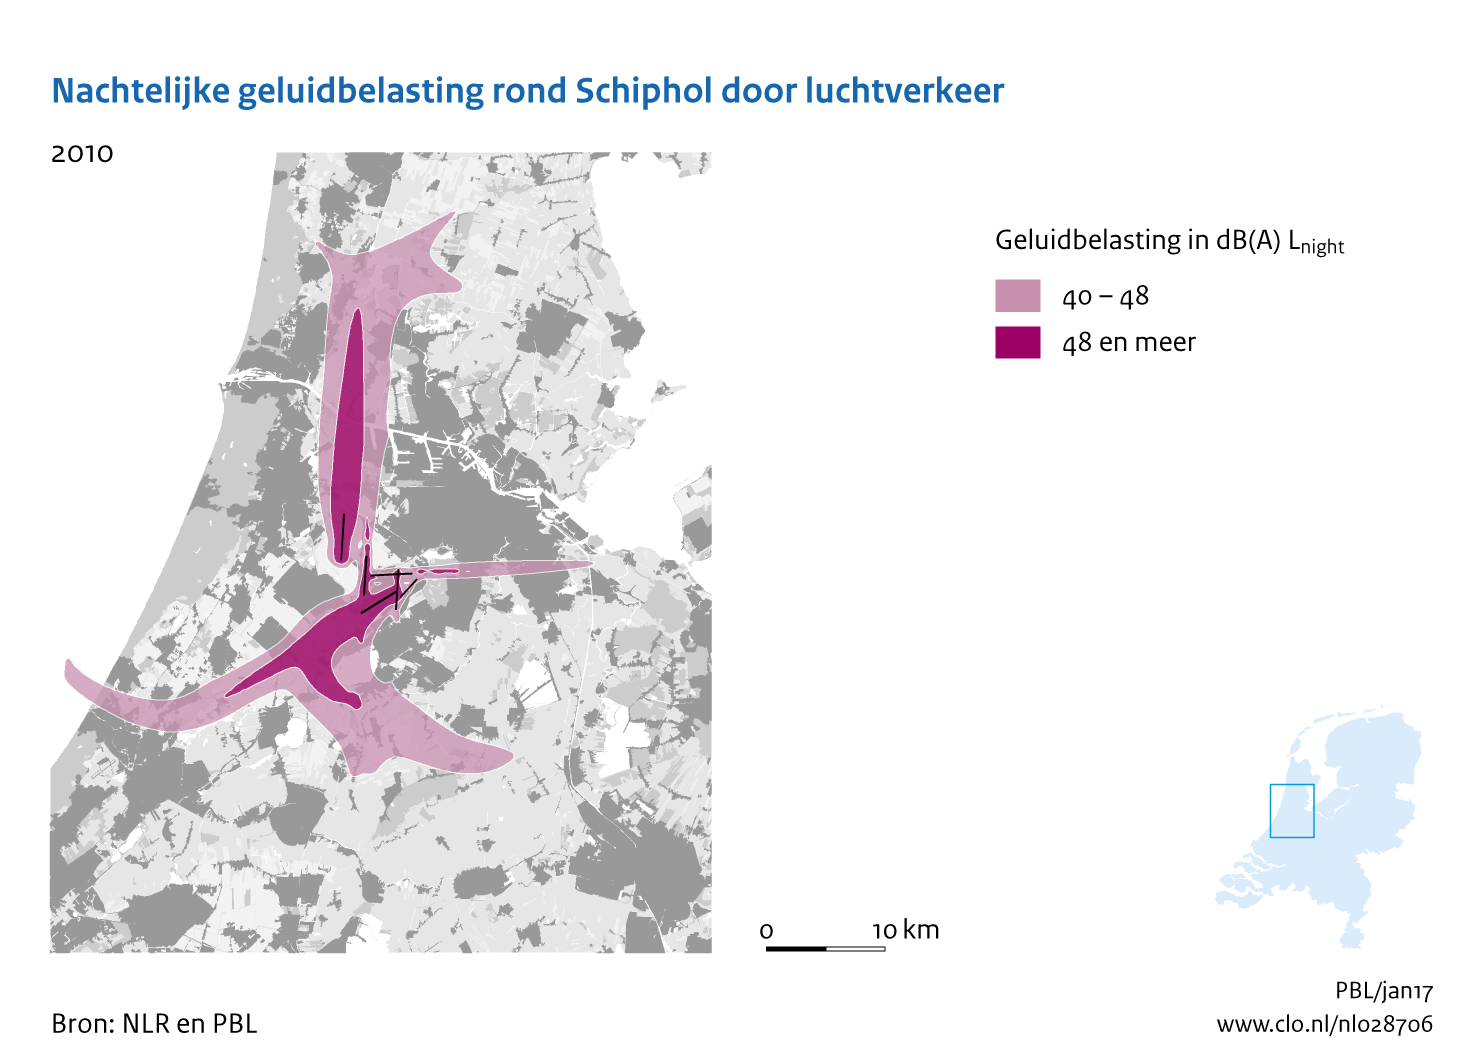 Figuur Nachtelijke geluidbelasting rond Schiphol door luchtverkeer, 2010. In de rest van de tekst wordt deze figuur uitgebreider uitgelegd.